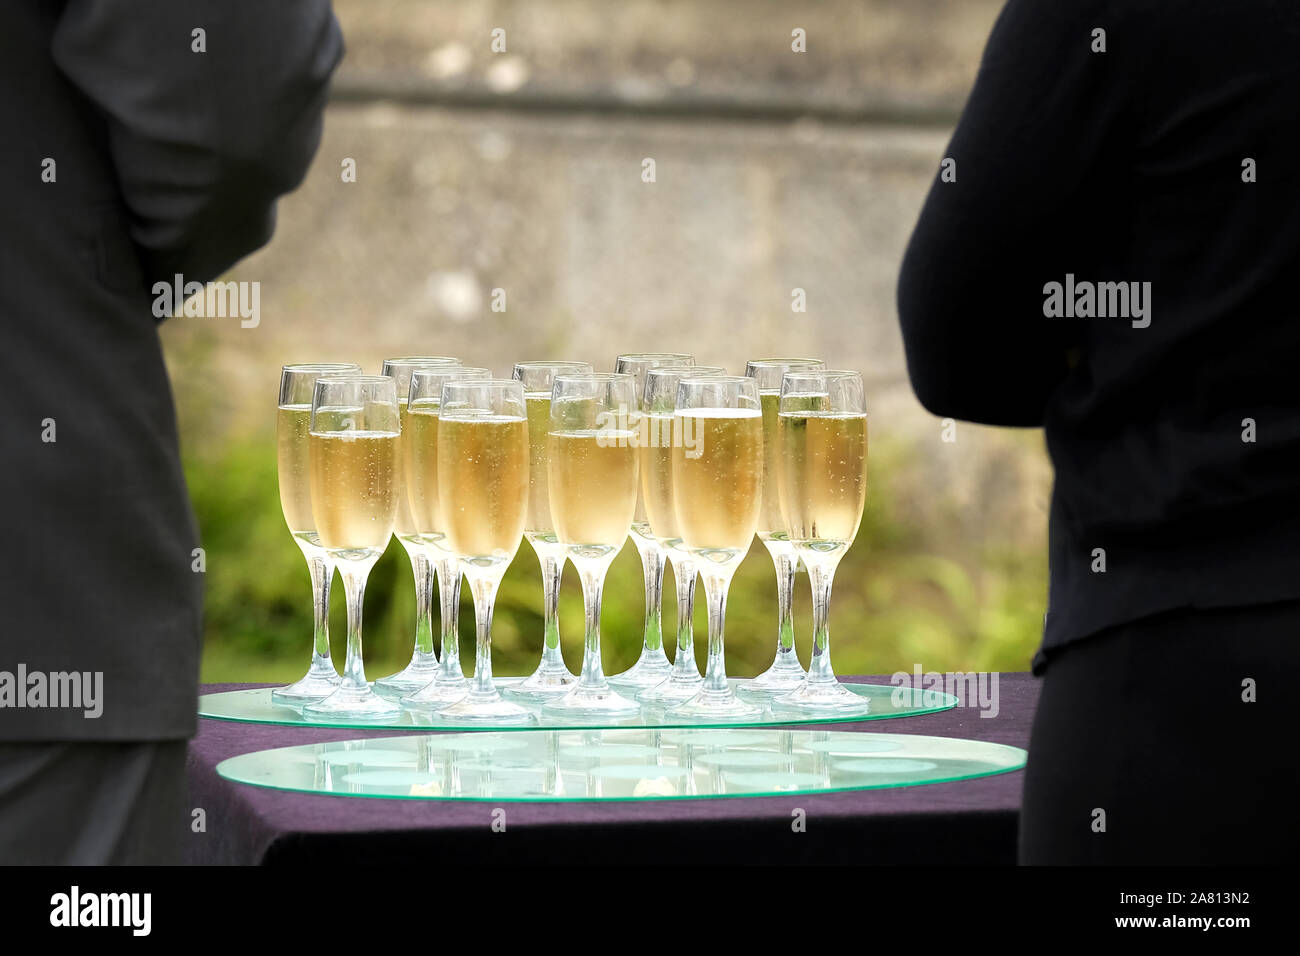 Un plateau de verres de lunettes ou rempli de champagne et en attente d'être prises par des invités lors d'une réception de mariage Banque D'Images